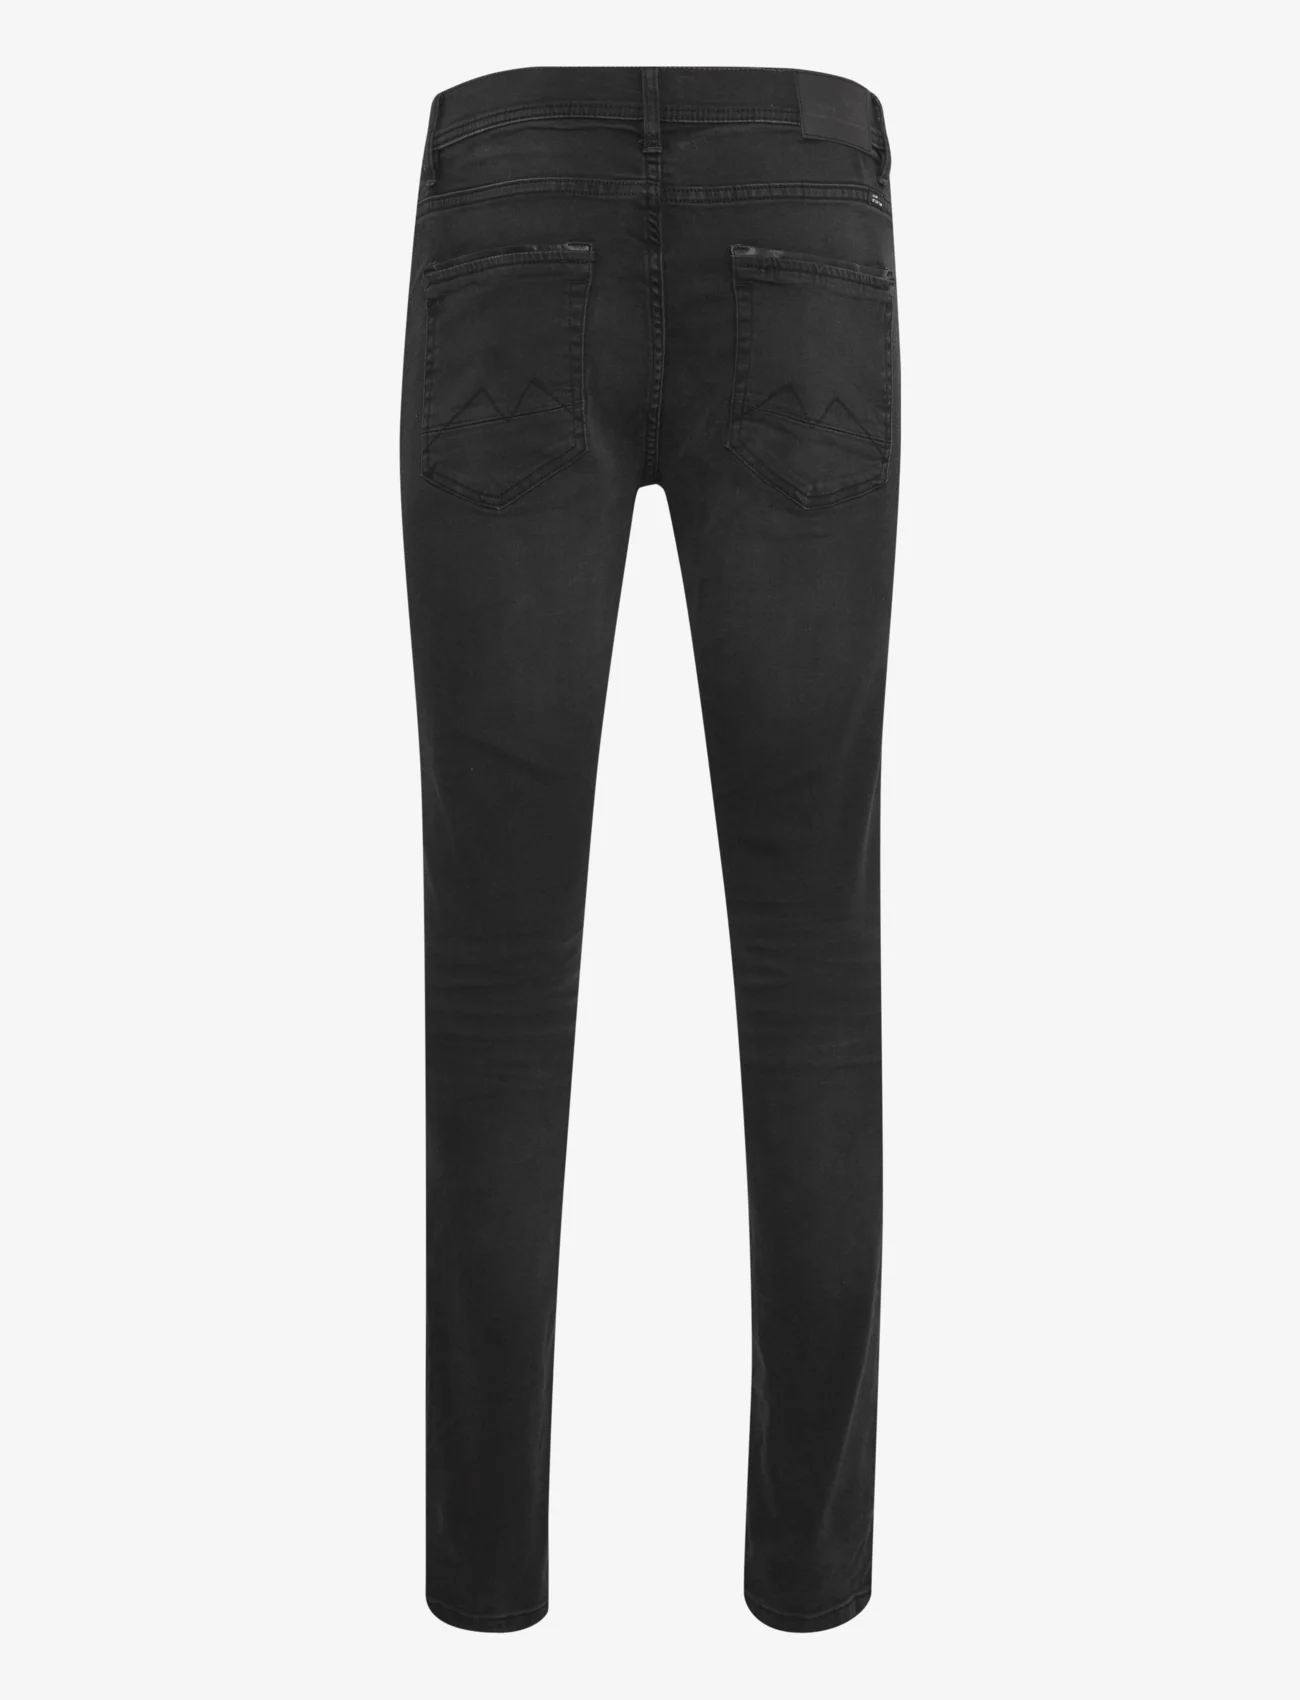 Blend - Jet fit - NOOS - slim fit jeans - denim black - 1